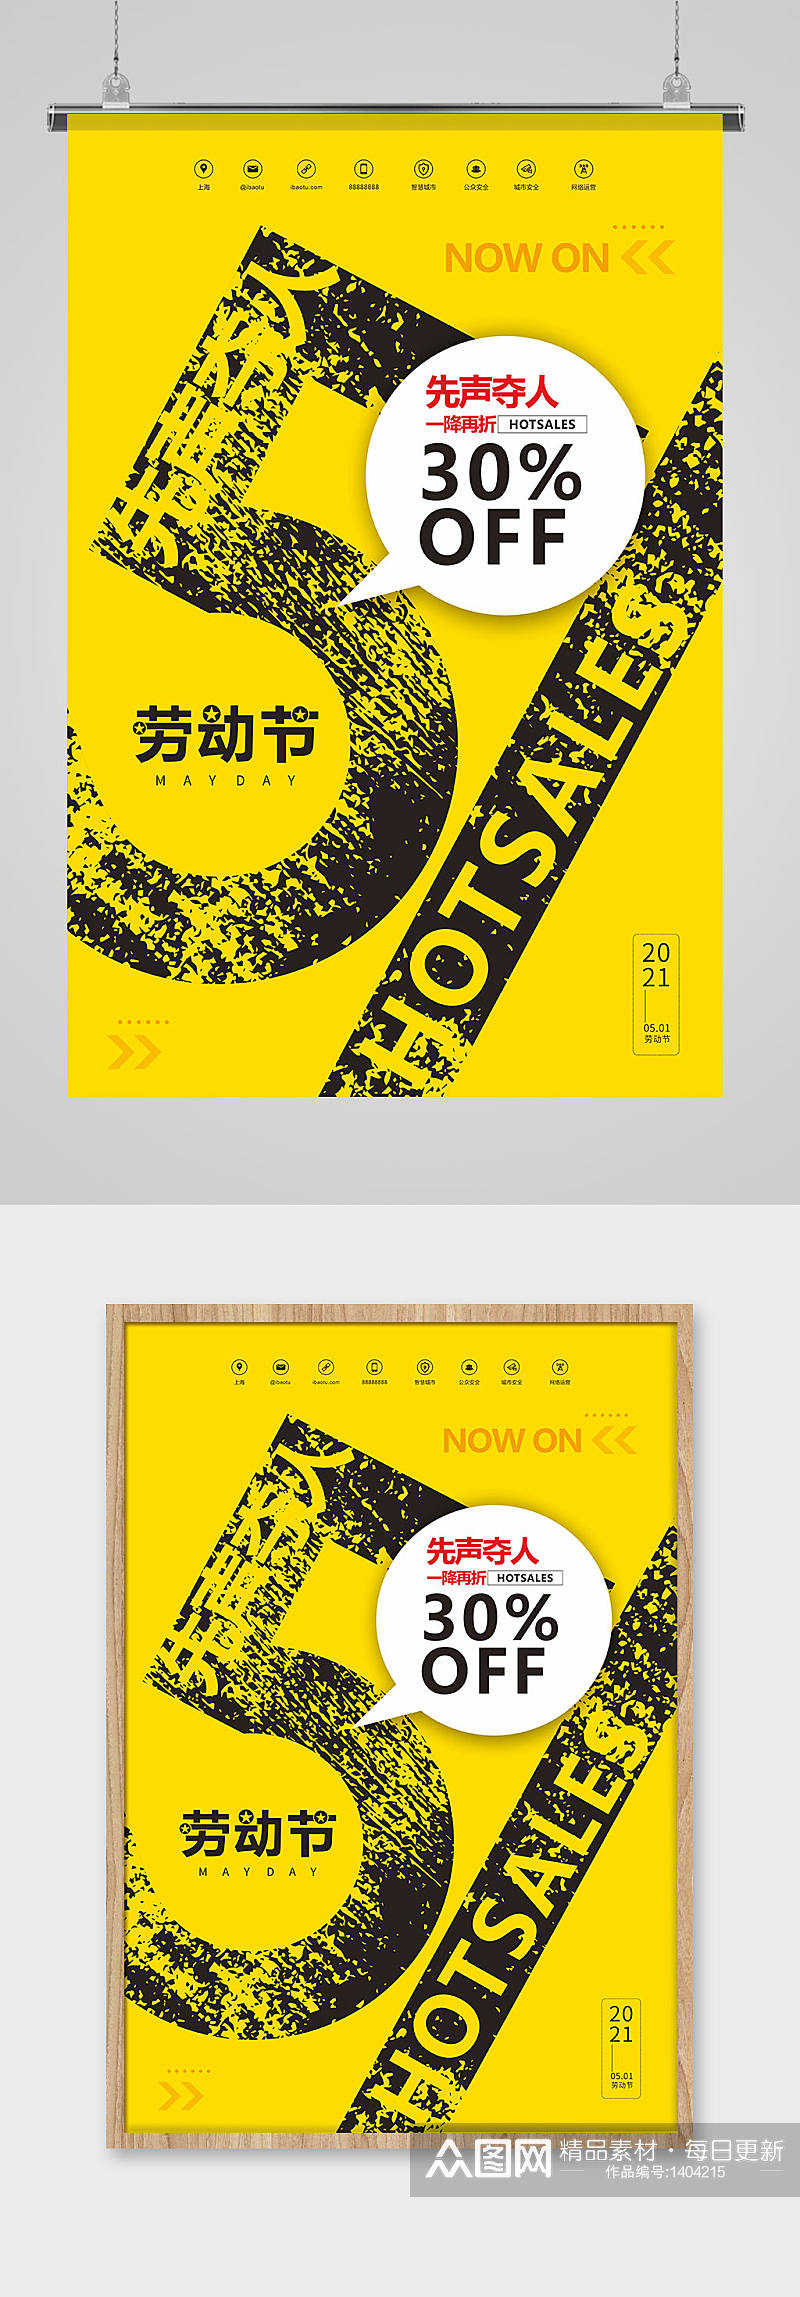 黄黑色五一劳动节促销优惠斑驳文字海报素材